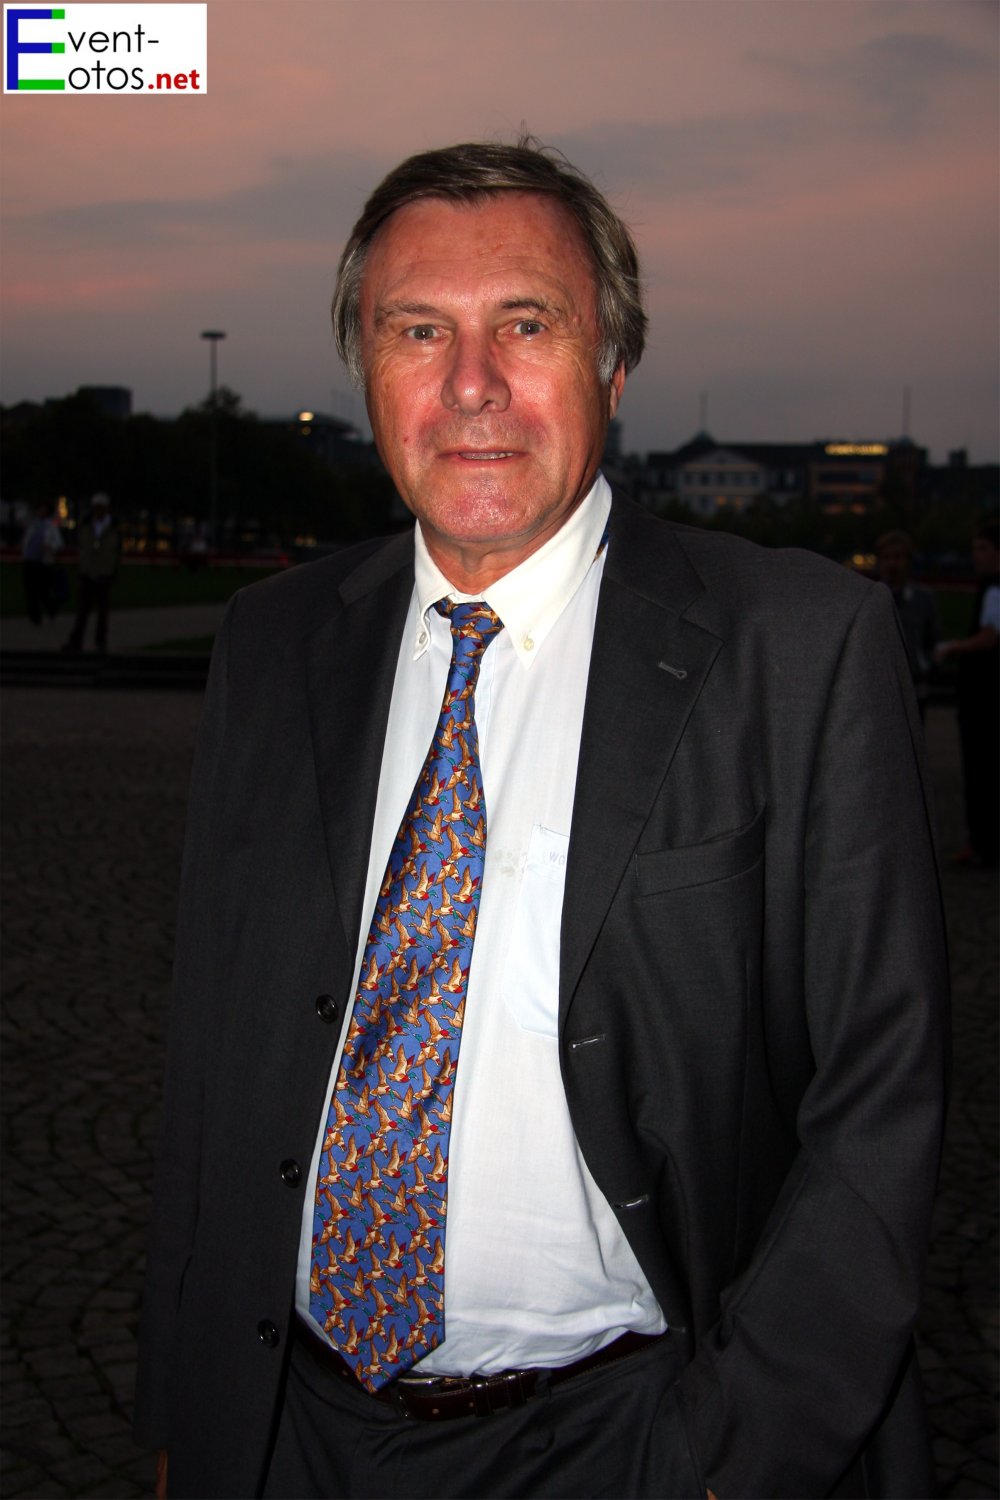 Wolfgang Gehardt (FDP)
